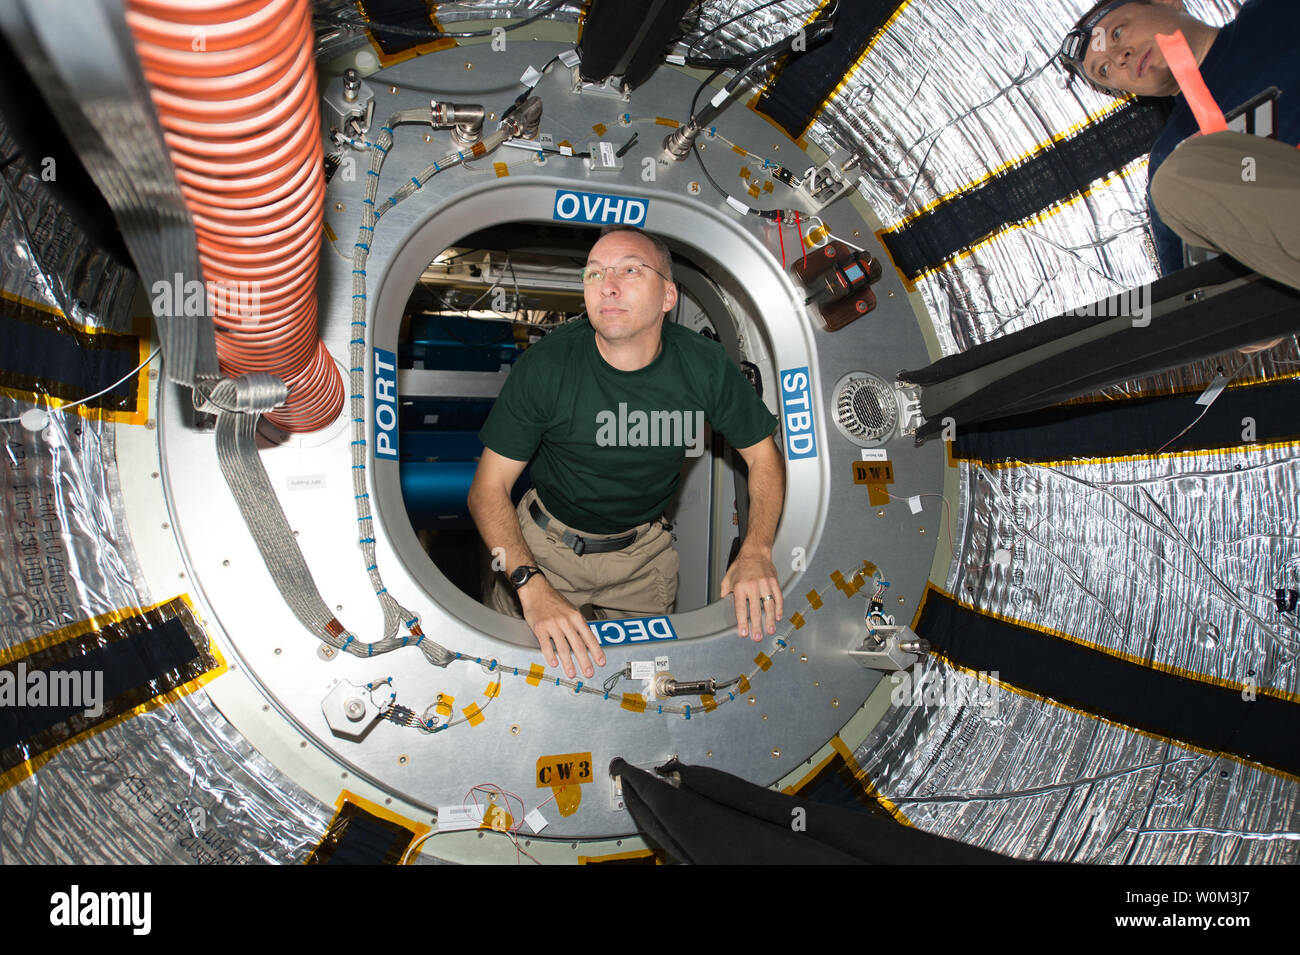 L'astronaute de la NASA Randy Bresnik regarde par la trappe de la Station spatiale internationale, Bigelow Aerospace extensible Module (ROUTE) le 31 juillet 2017. Il a partagé cette photo sur les médias sociaux le 2 août, commentant, "Demandez-vous jamais comment vous regardez quand vous entrez dans une nouvelle partie d'un vaisseau spatial ? Eh bien, c'est elle. Première fois à l'intérieur du faisceau extensible module.' Le faisceau est un module extensible expérimental qui pèse moins d'une traditionnelle tout en permettant plus d'espace pour vivre et travailler. Ils fournissent une protection contre le rayonnement solaire et cosmique, des débris spatiaux, et à d'autres contaminants. Les équipages voyageant Banque D'Images